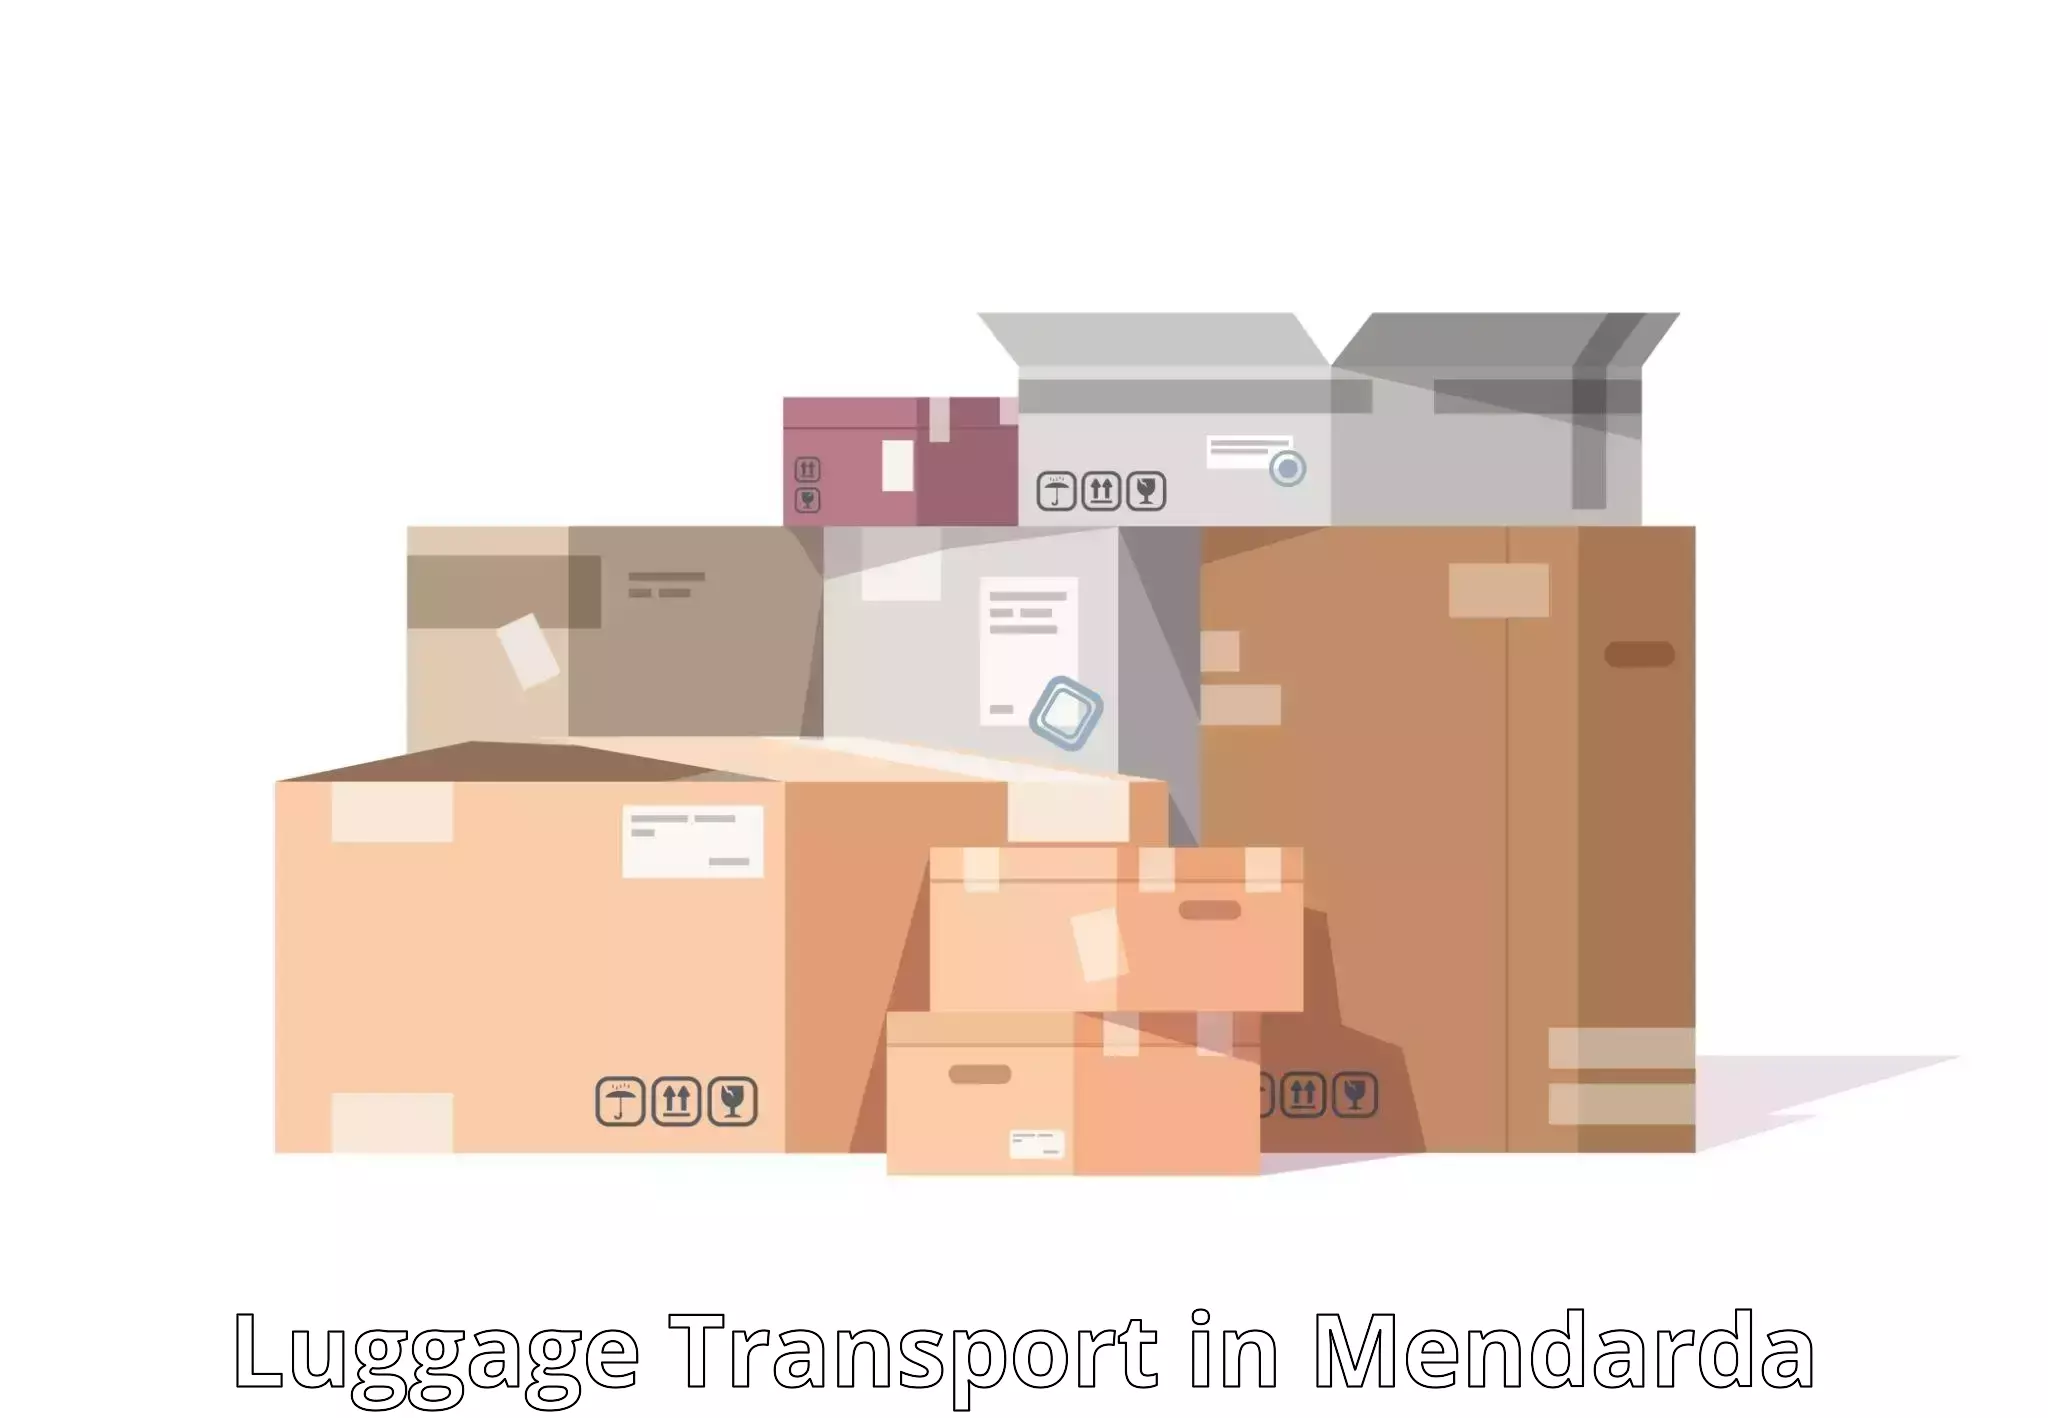 Luggage transport tips in Mendarda